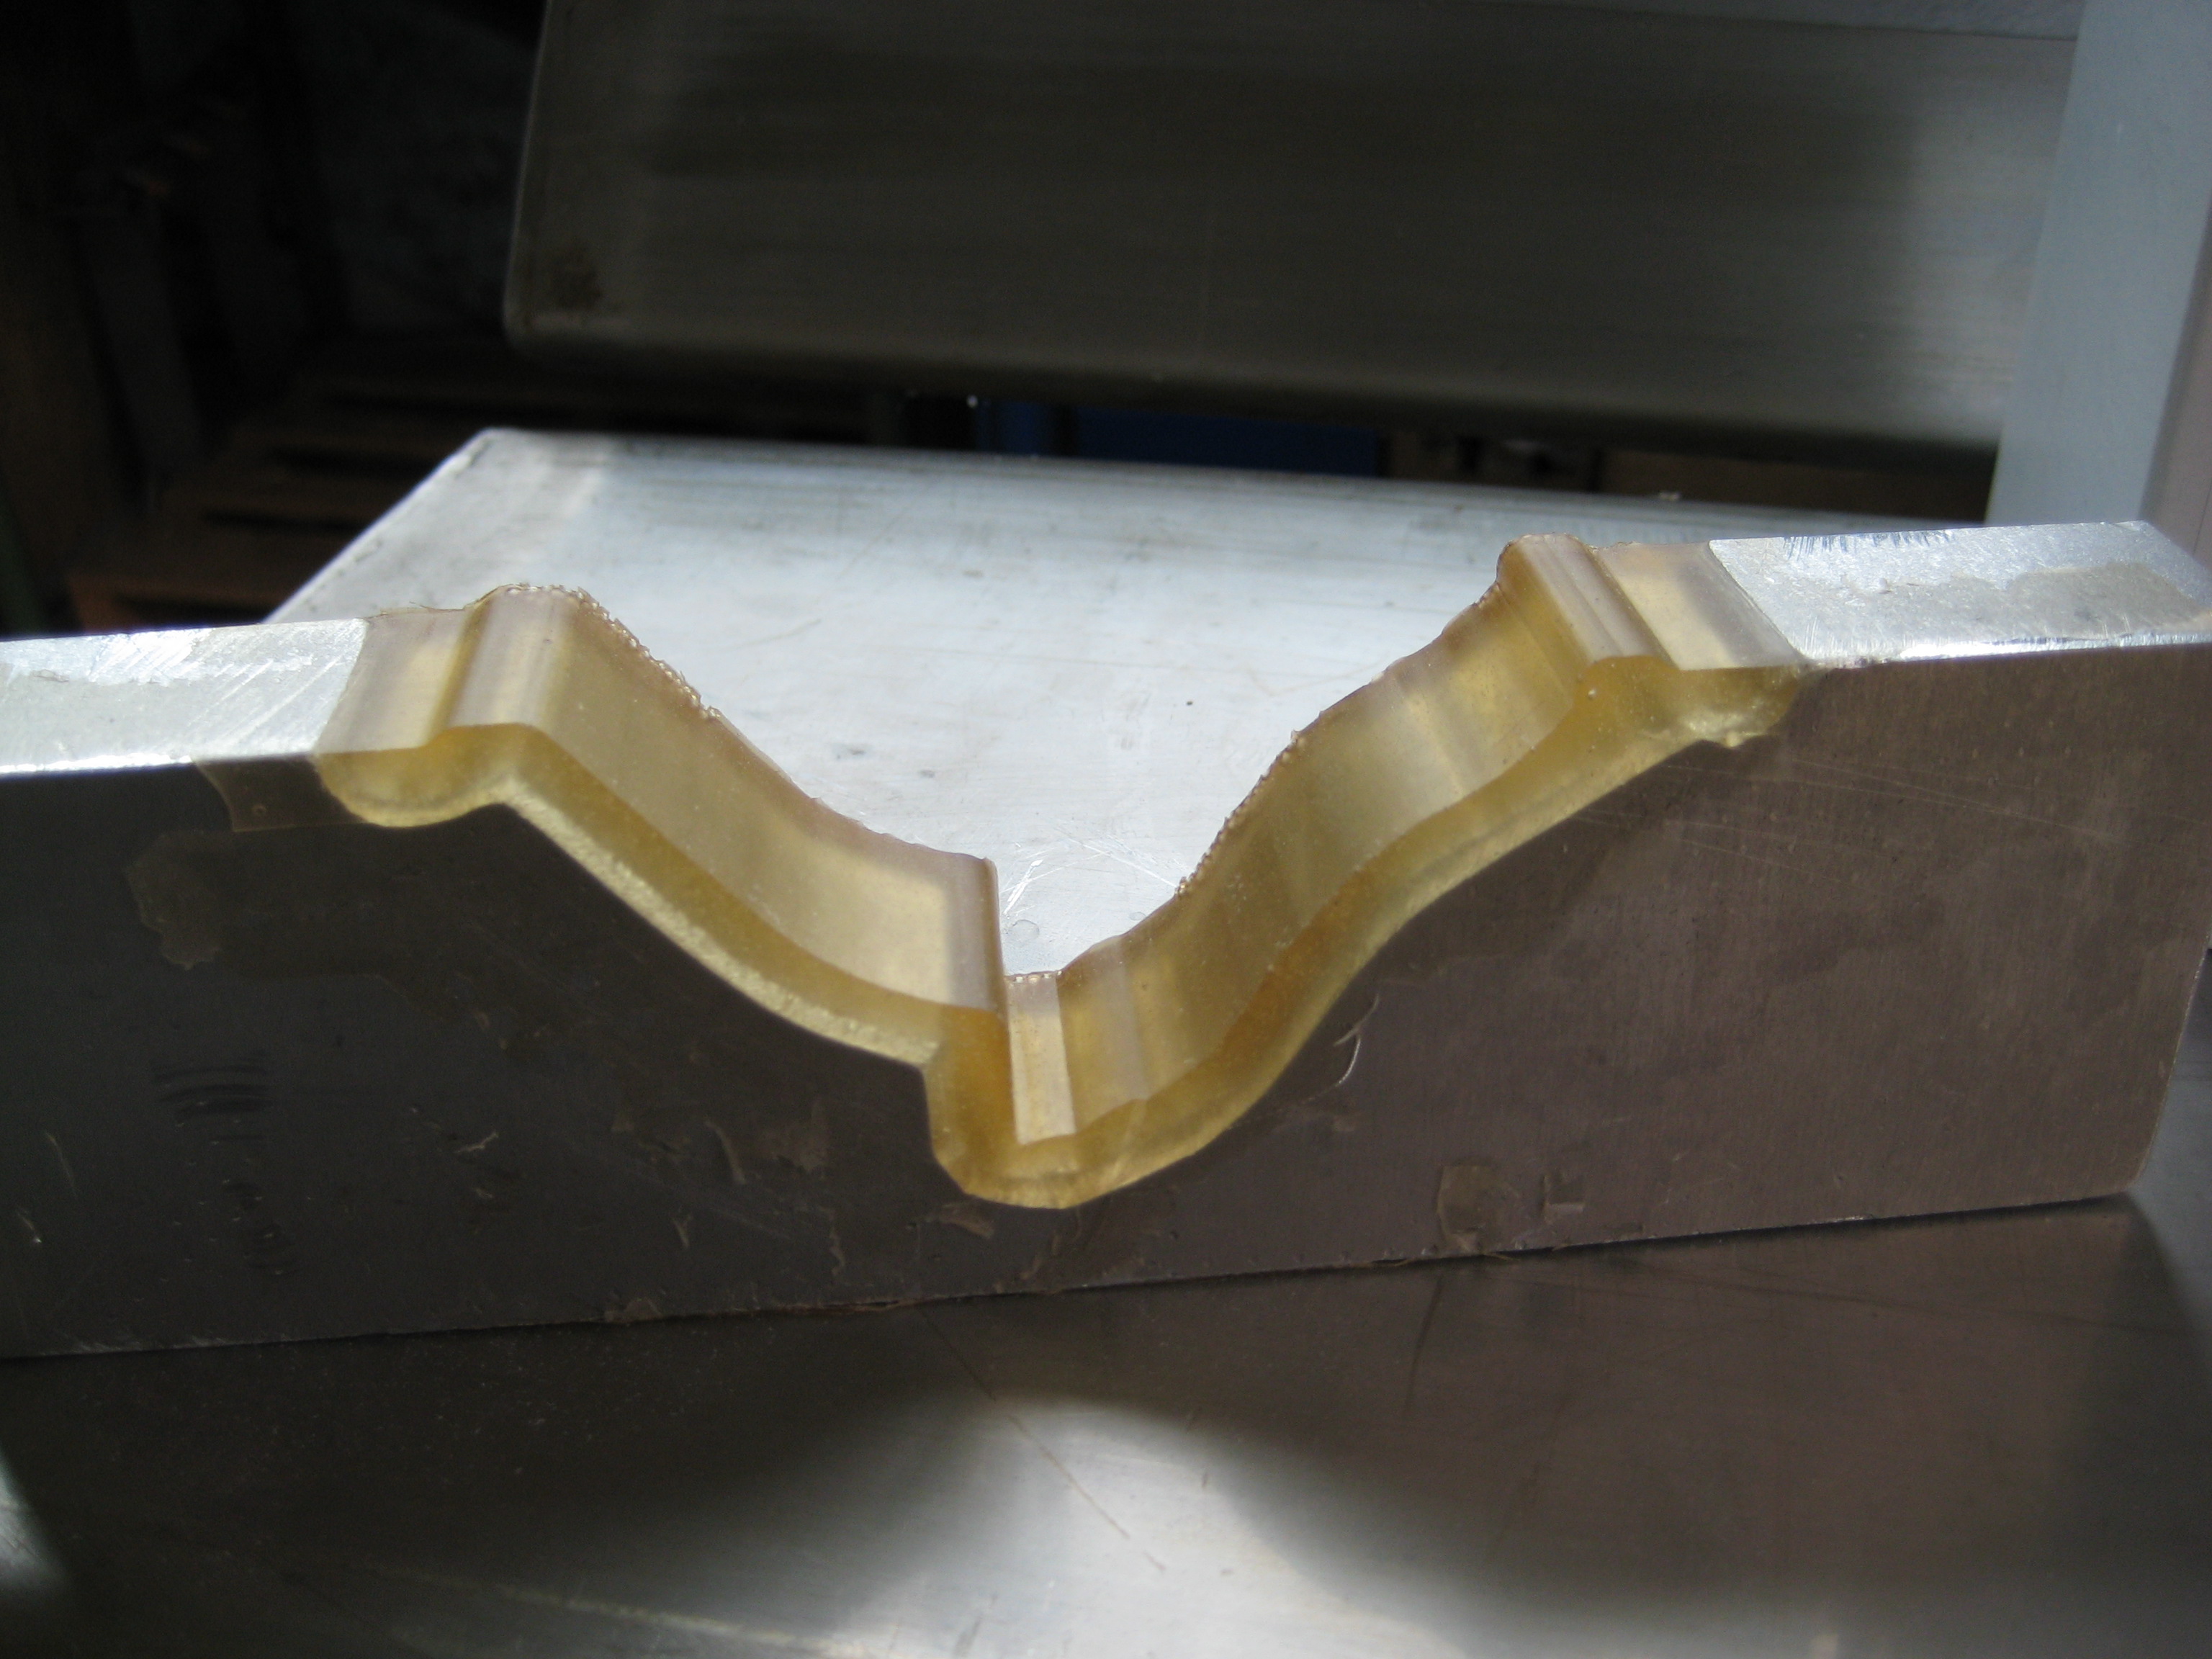 聚氨酯 80 | polyurea casting and coating resin